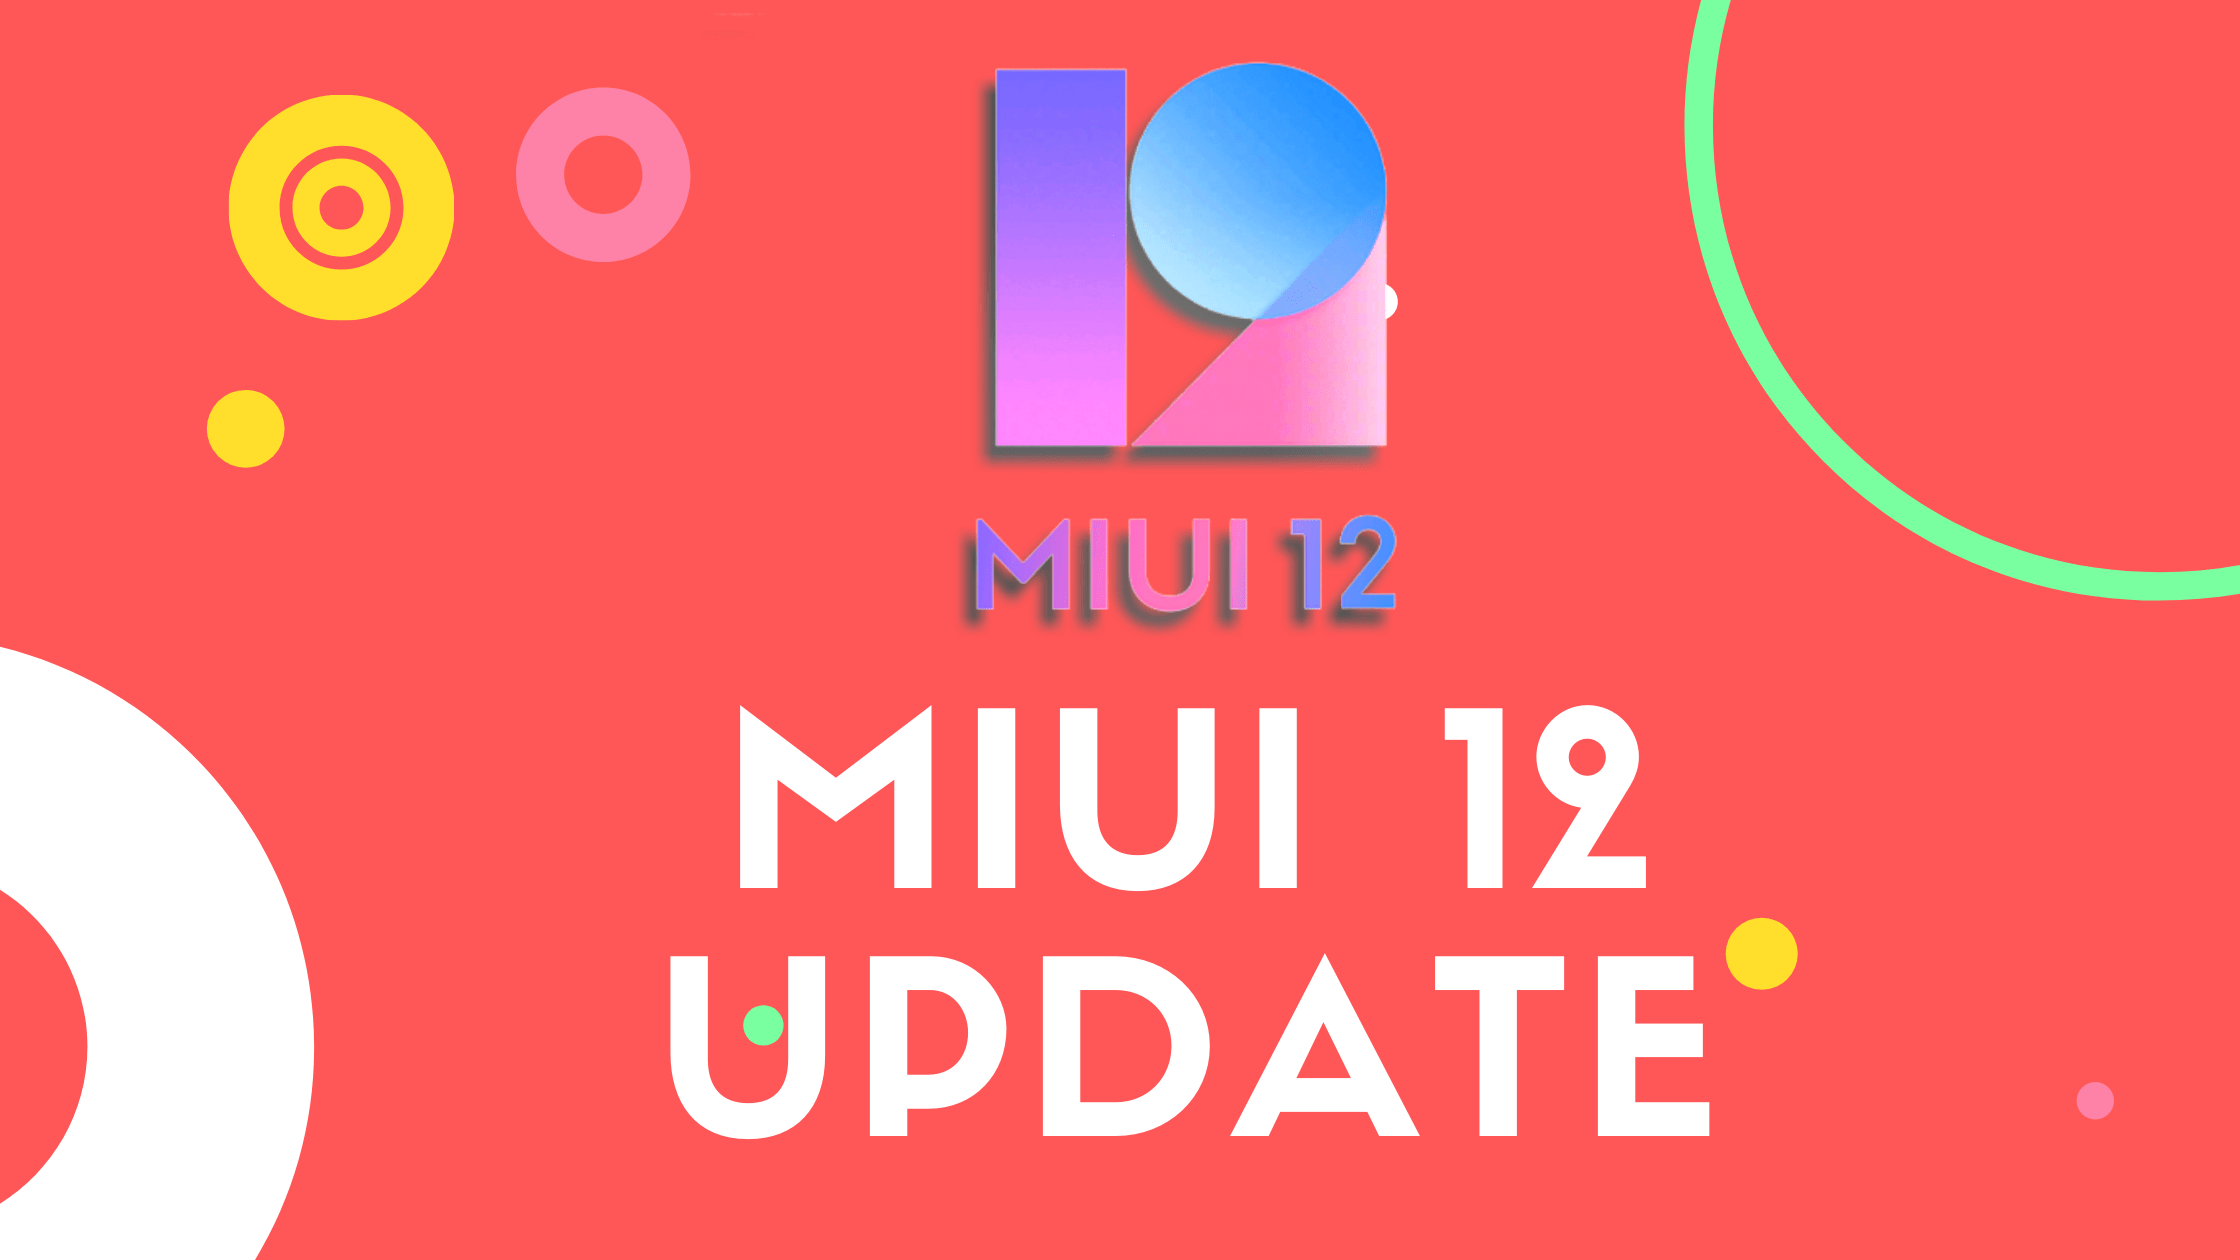 miui 12 update